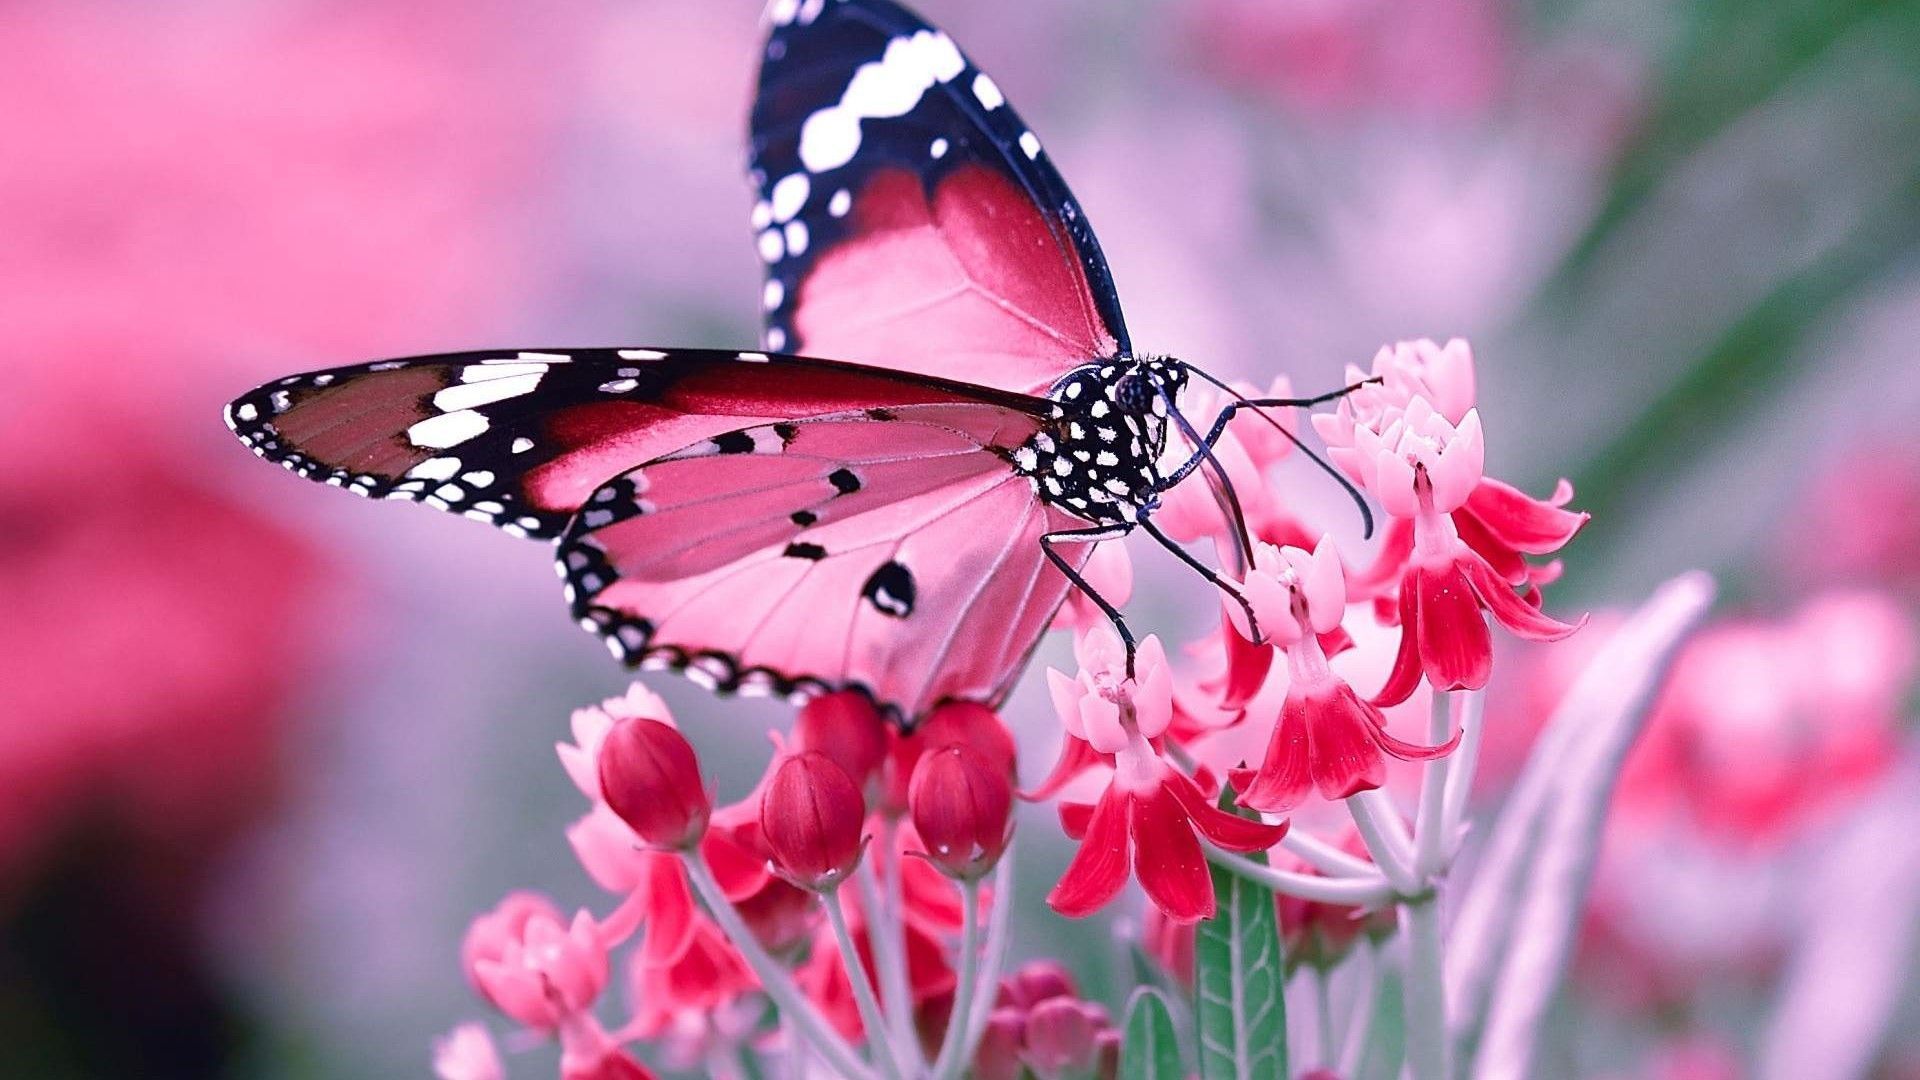 Hình nền máy tính bướm hồng miễn phí sẽ làm cho máy tính của bạn trở nên đáng yêu và nữ tính hơn bao giờ hết. Những hình nền bướm hồng tuyệt đẹp trong bộ sưu tập của chúng tôi mang đến sự lãng mạn và ngọt ngào cho không gian làm việc của bạn.